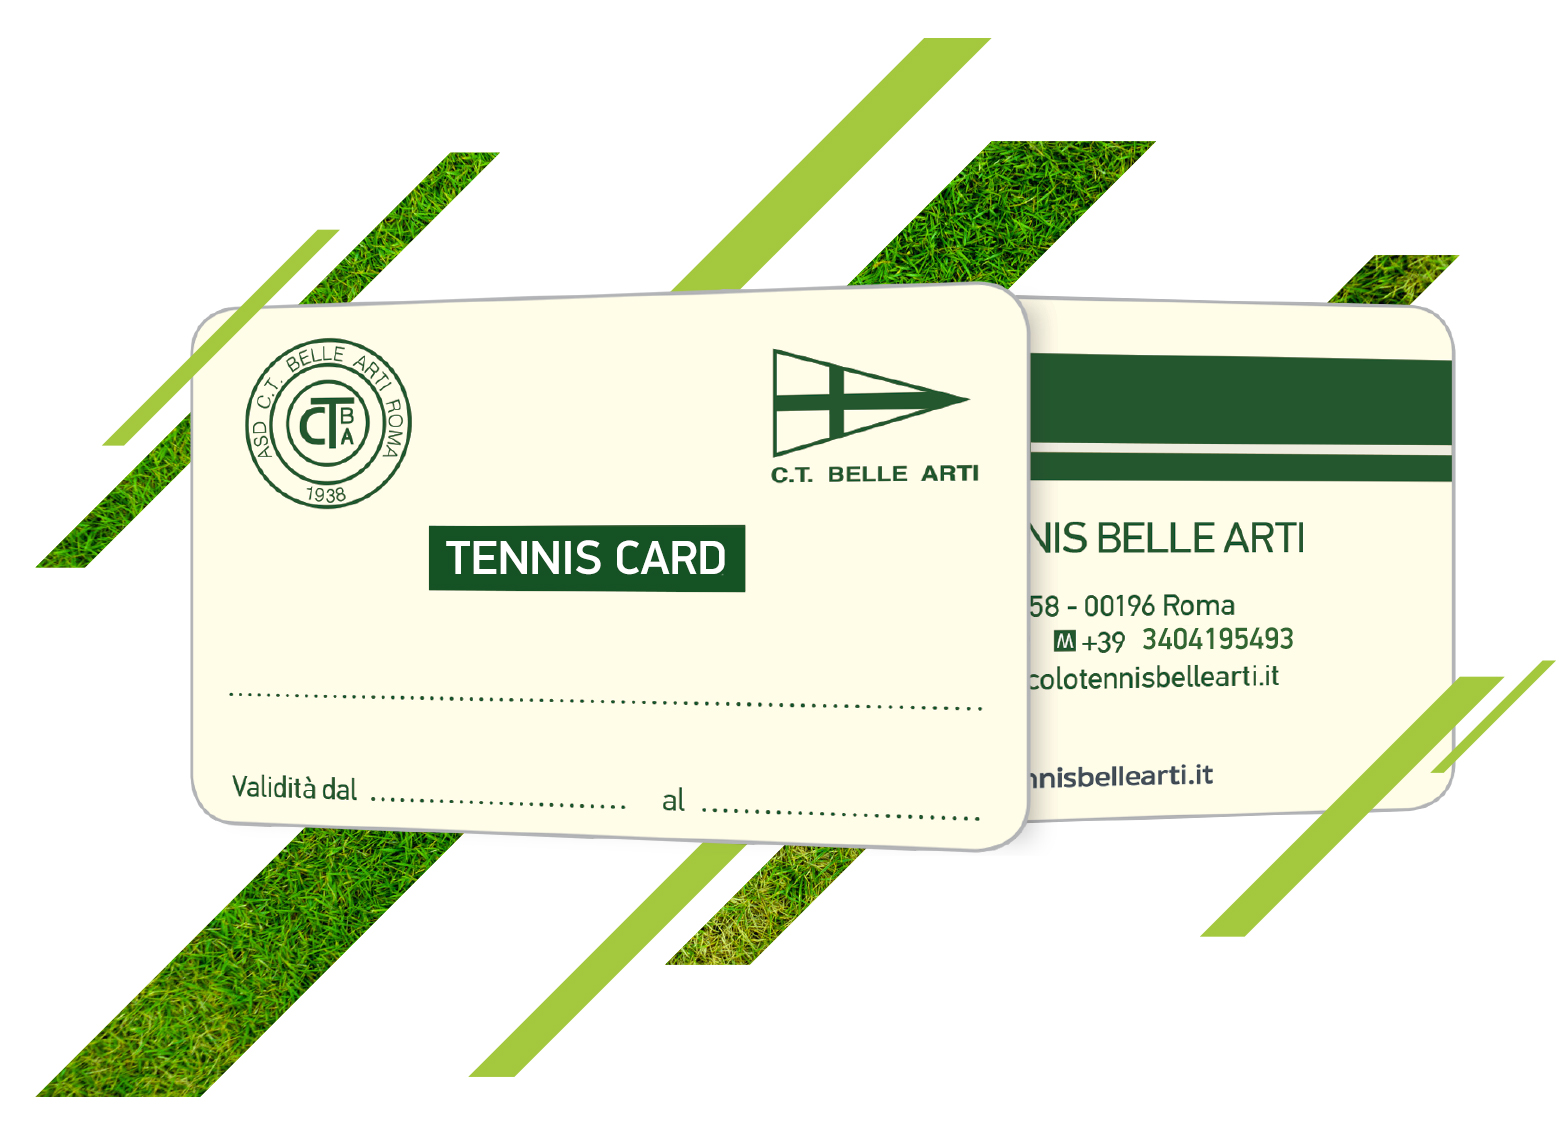 TENNIS CARD